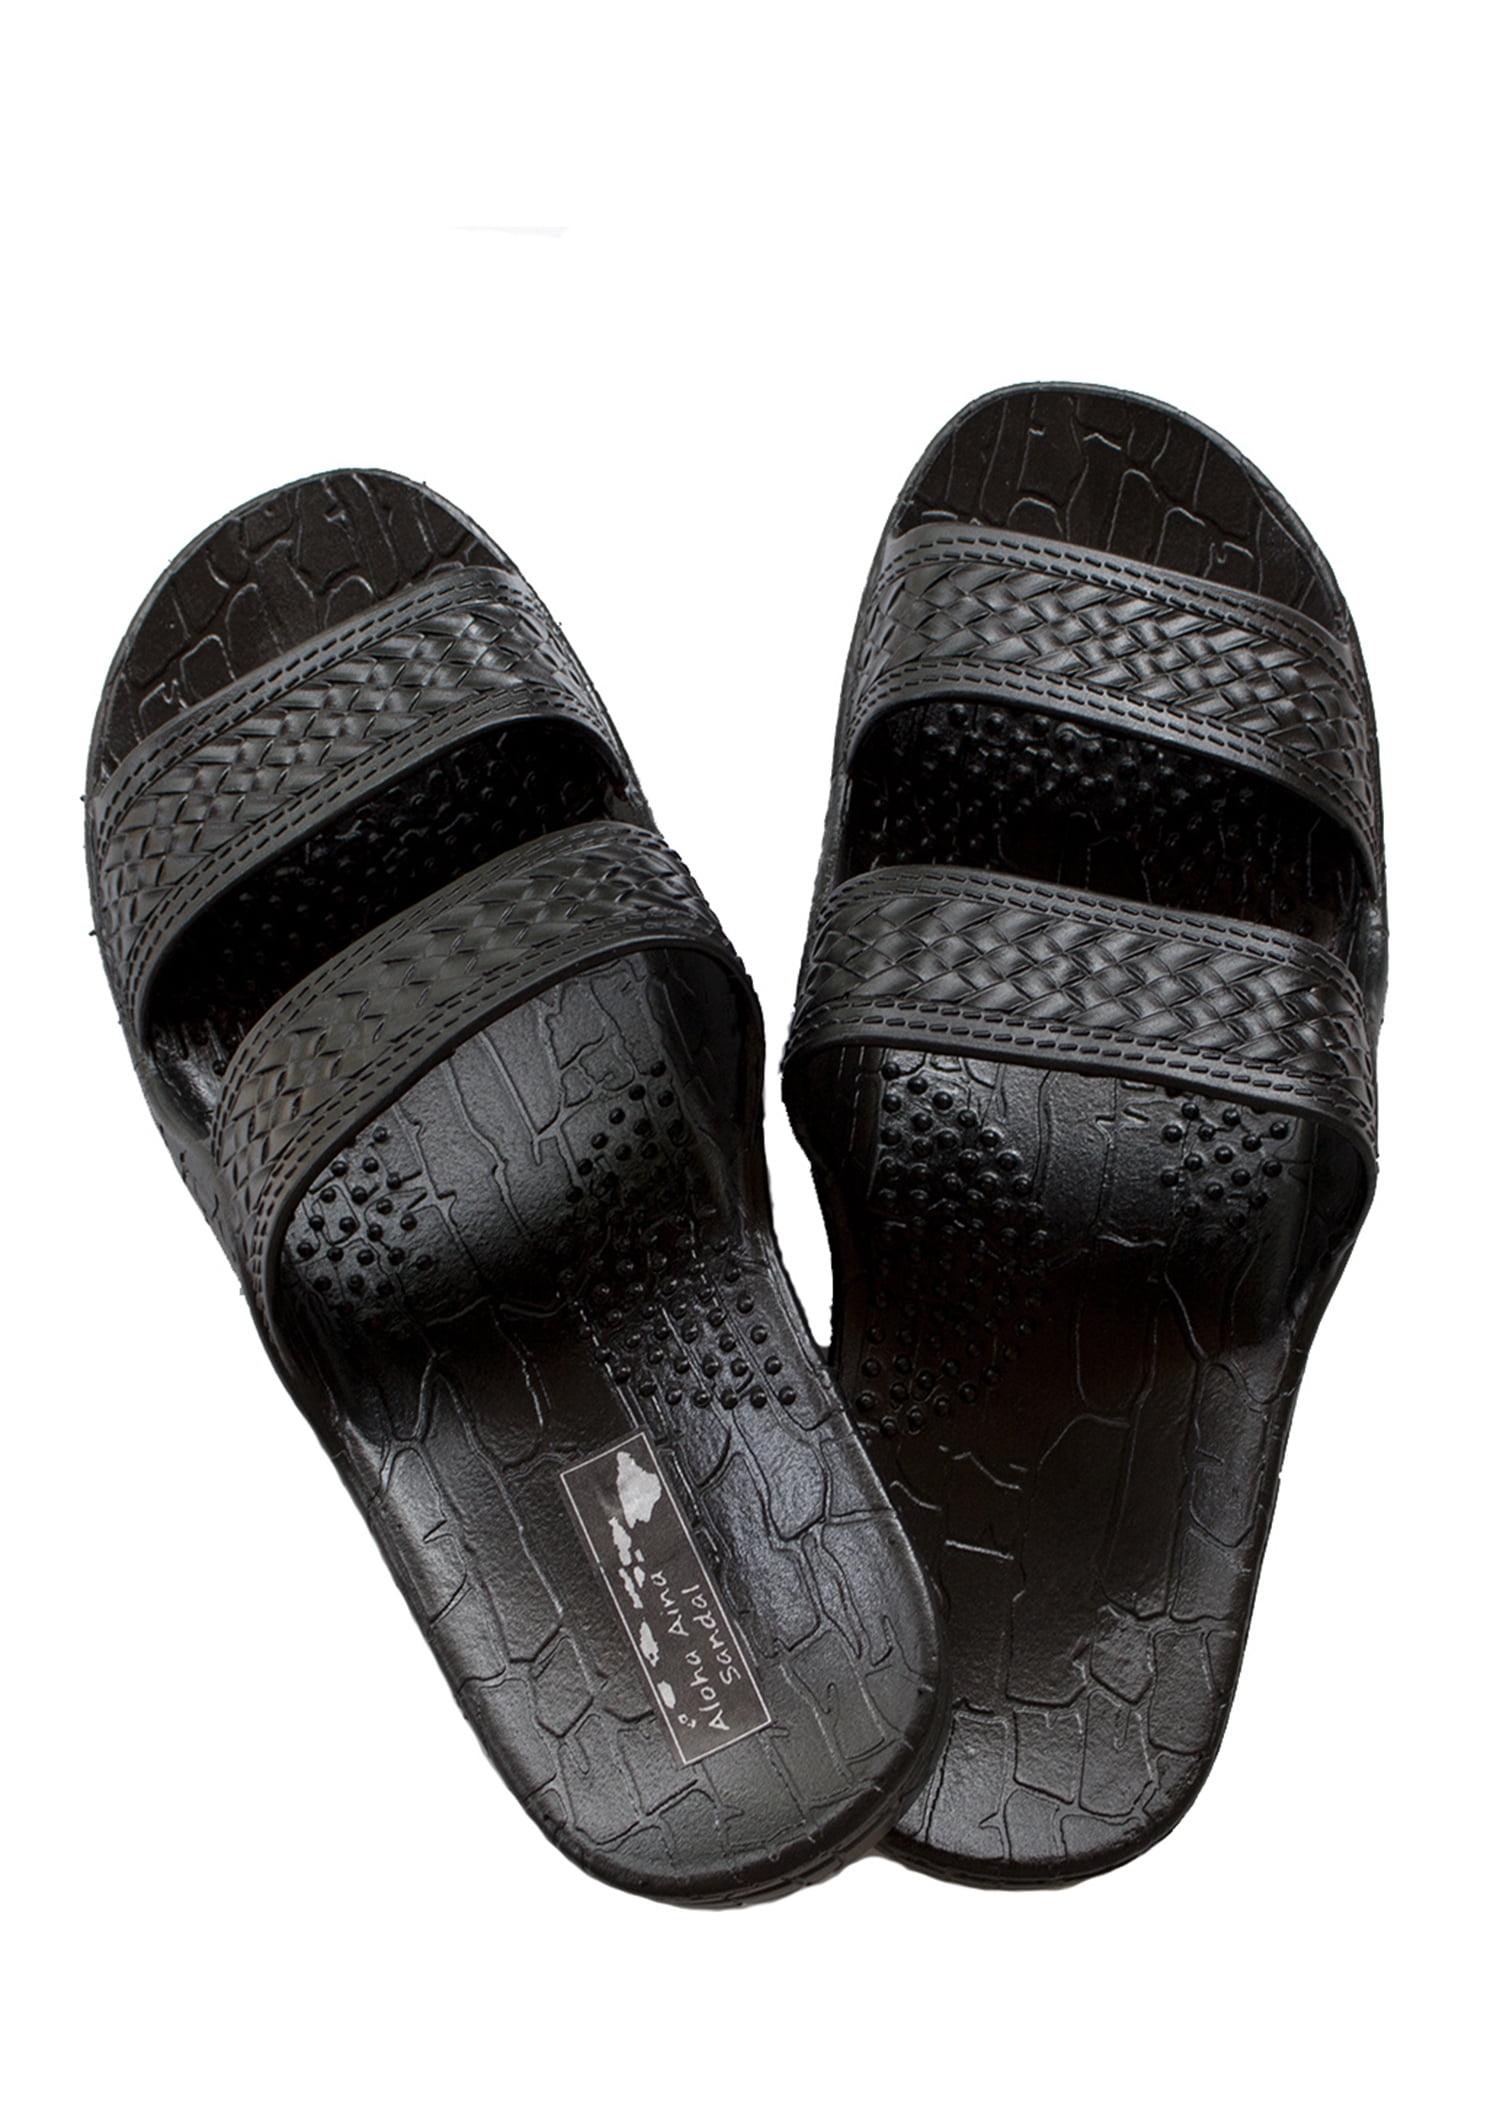 Authentic Imperial Jesus Sandals, Unisex men Women Teen (Womens size 14, Mens size 12, Black Color) -